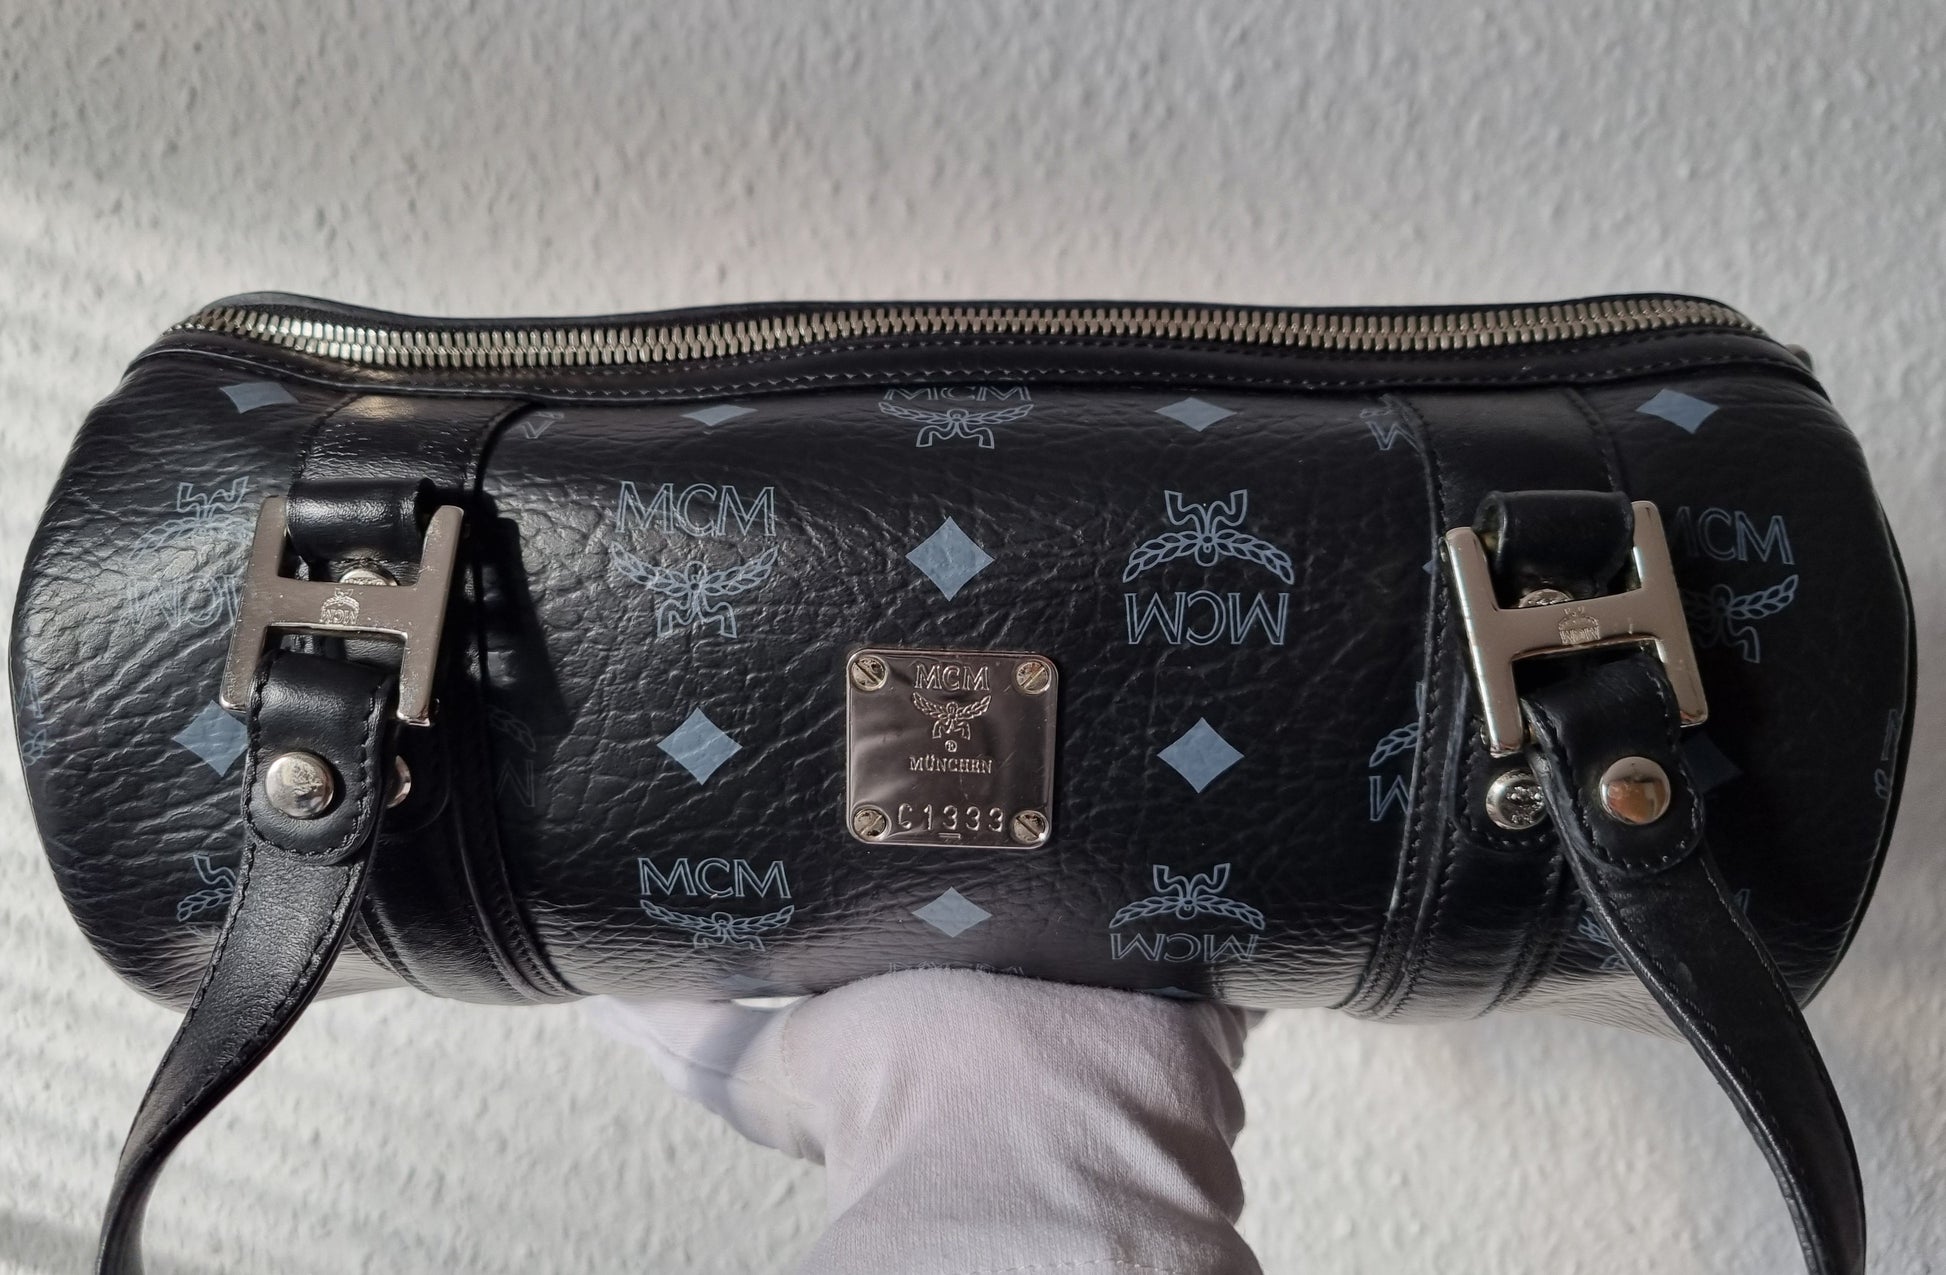 MCM: Handtaschen und Accessoires bei Just One More Handbag